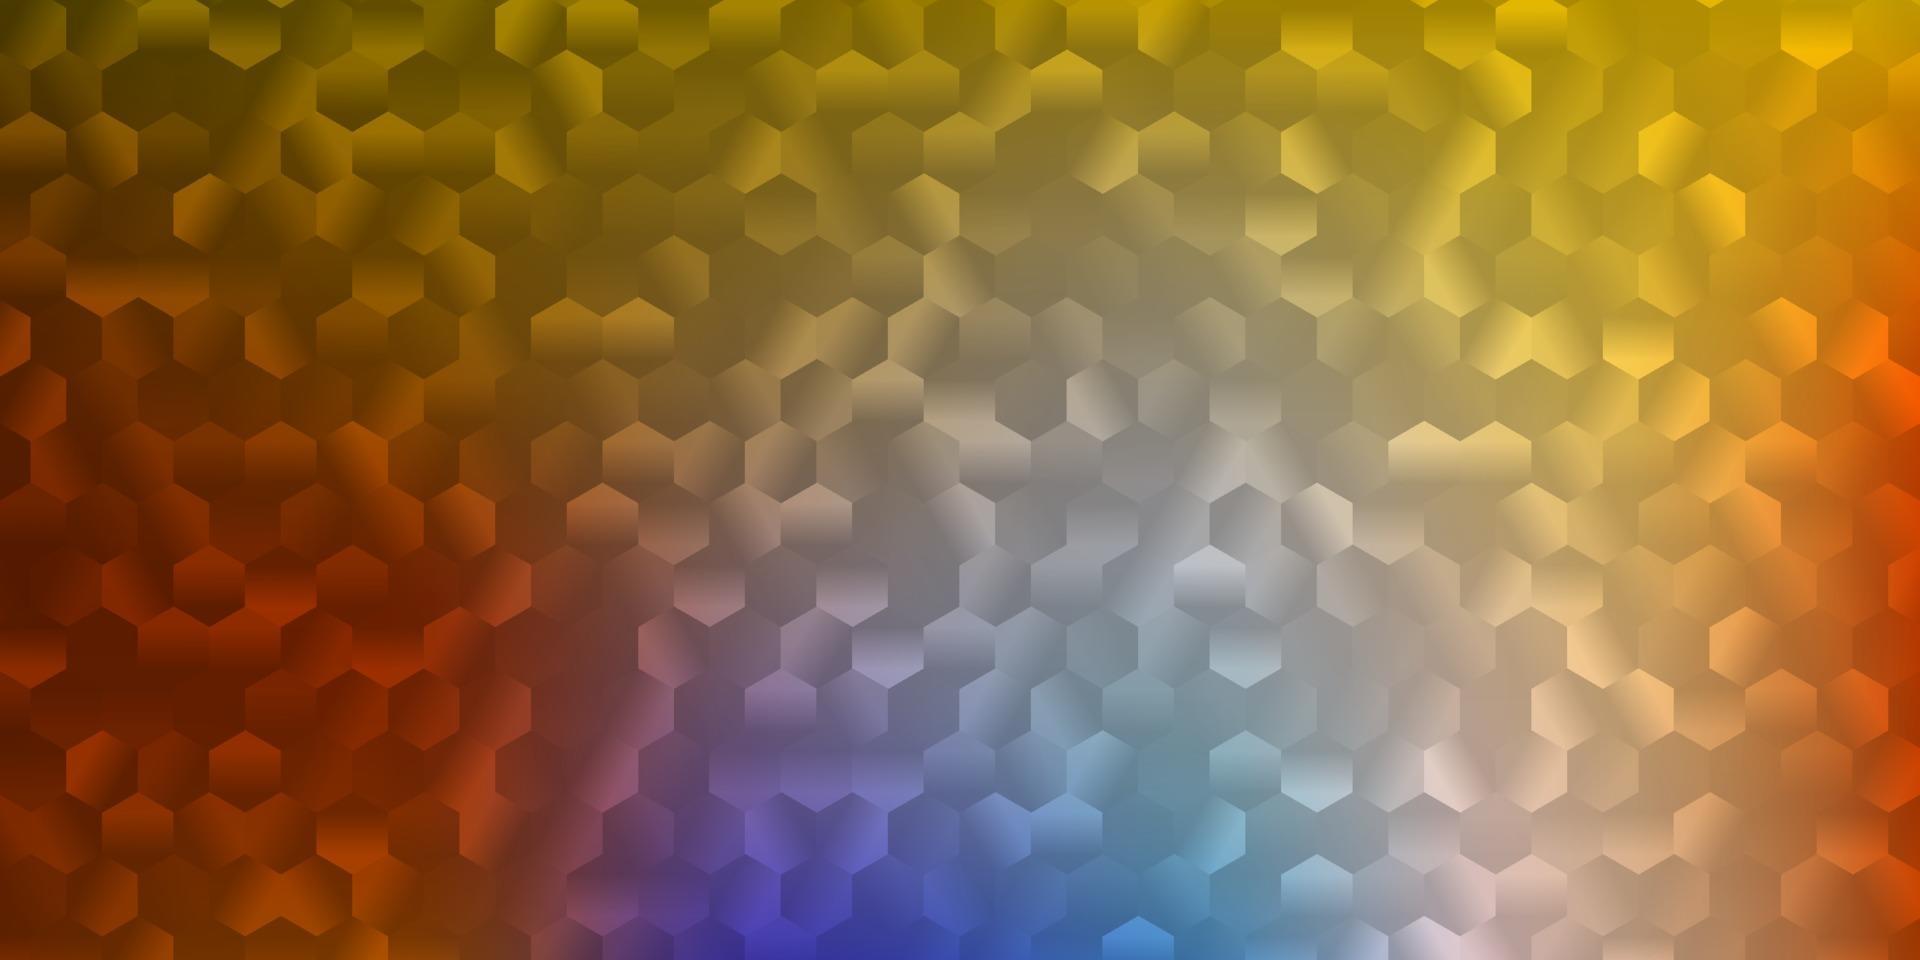 modelo de vetor azul claro e amarelo em um estilo hexagonal.